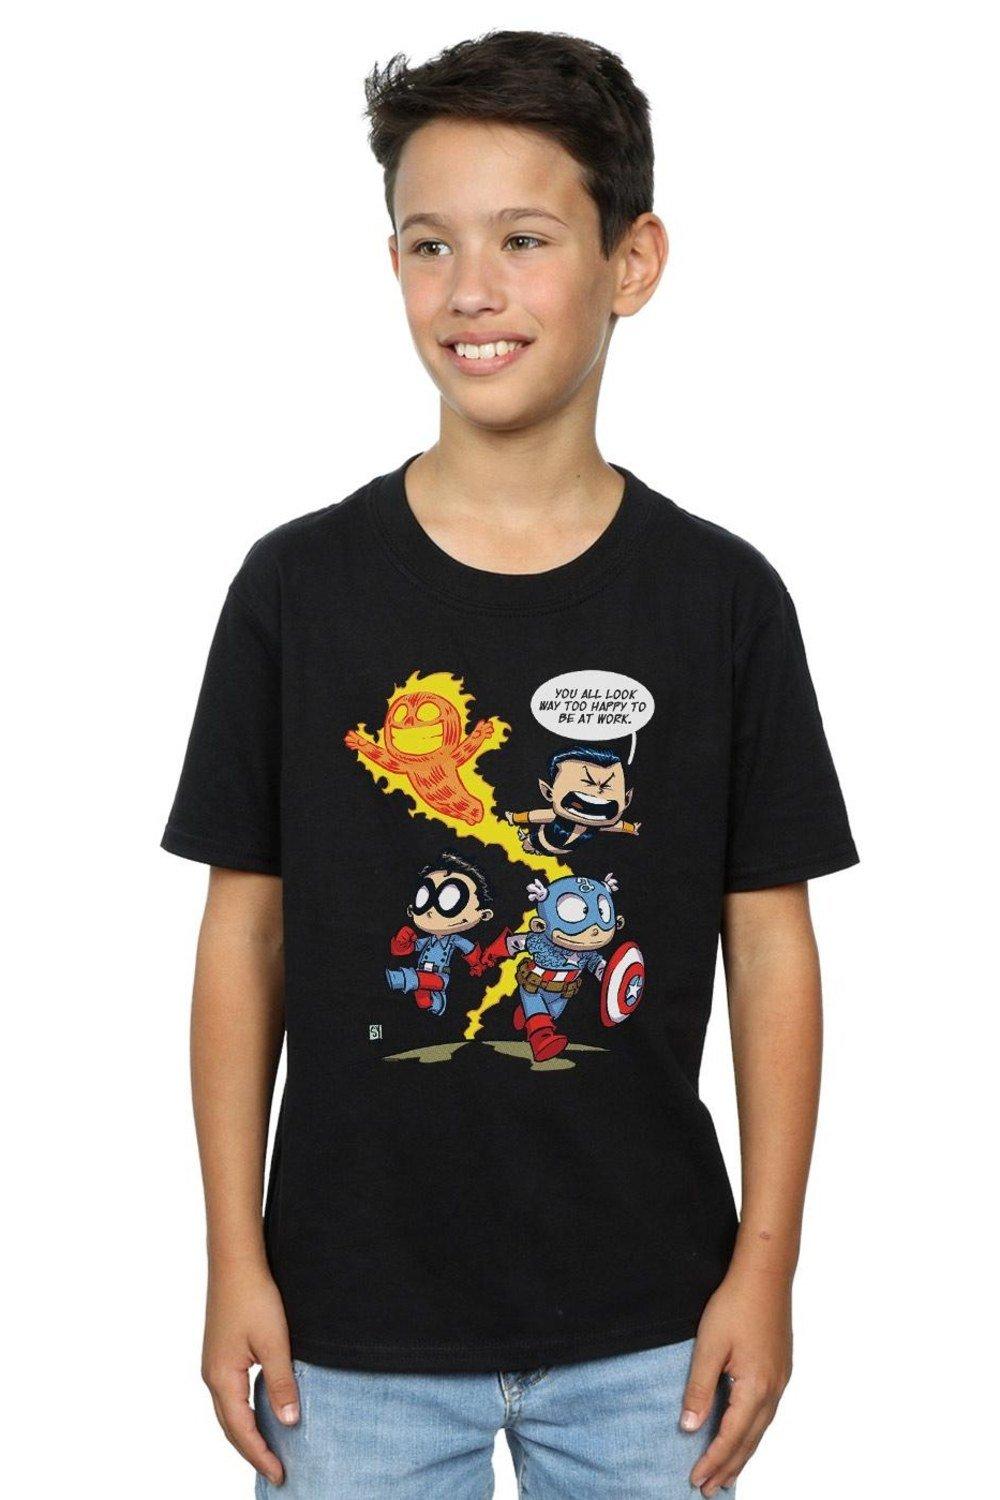 Avengers Invaders Cartoon T-Shirt